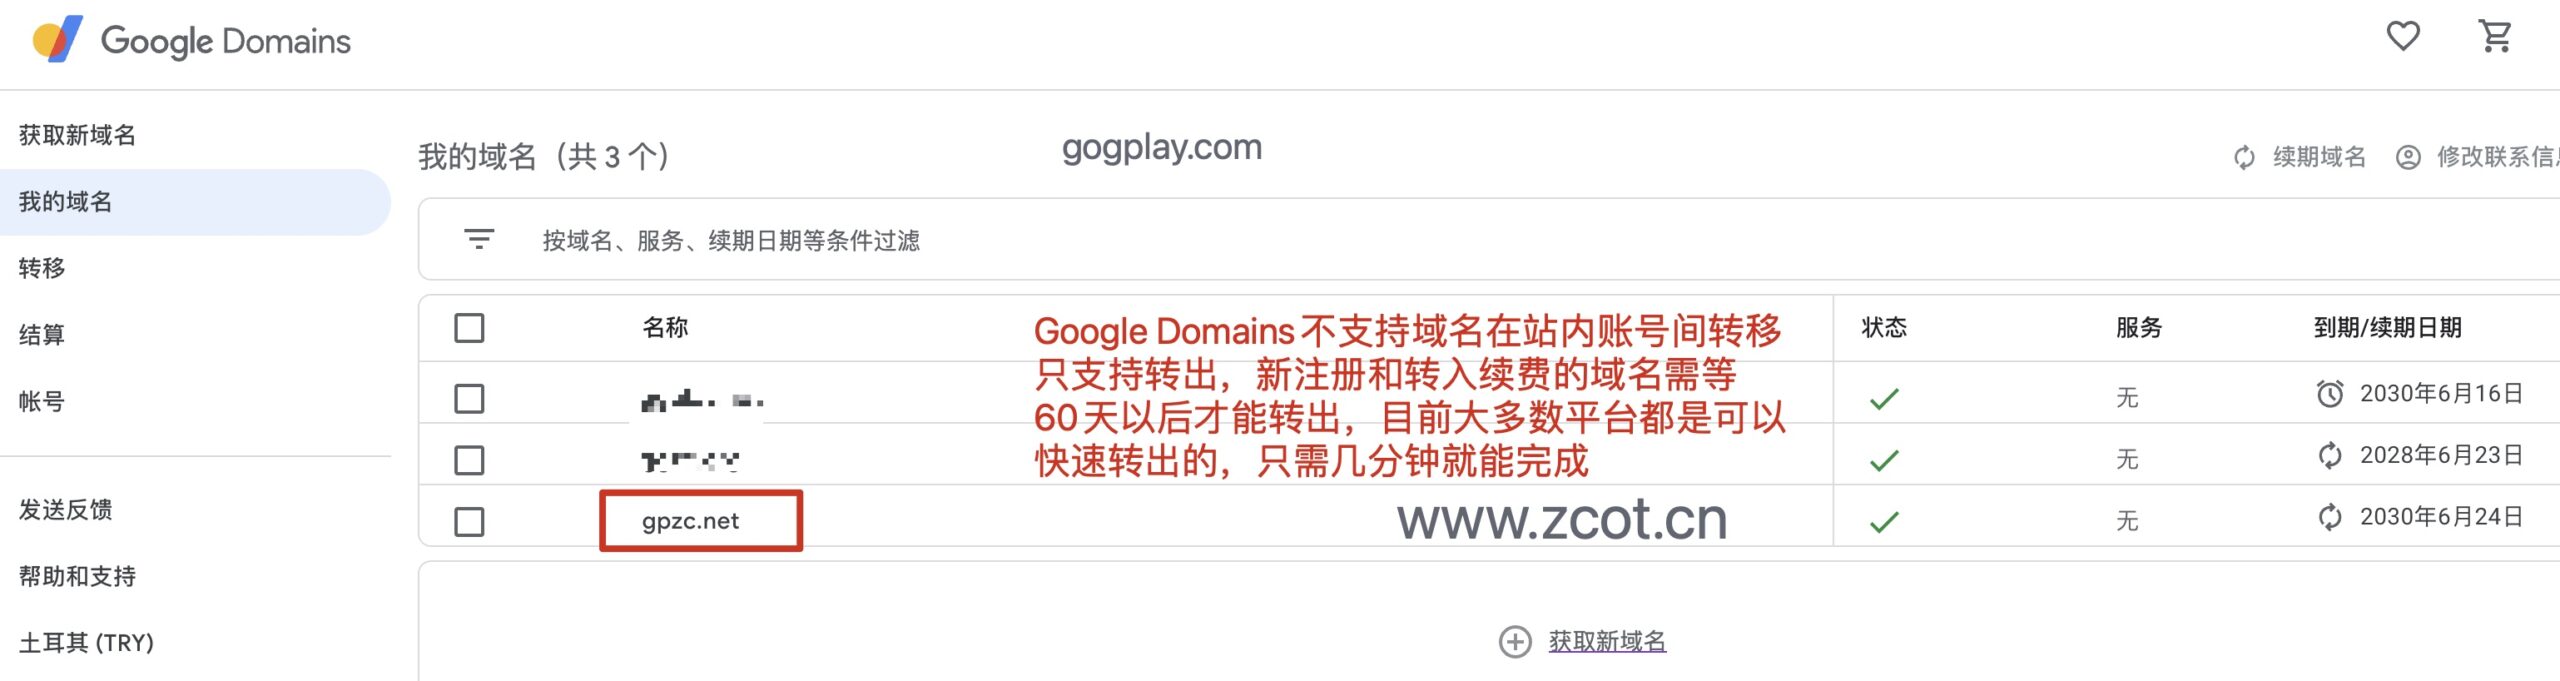 中国用户超低价注册Google Domains土耳其区域名